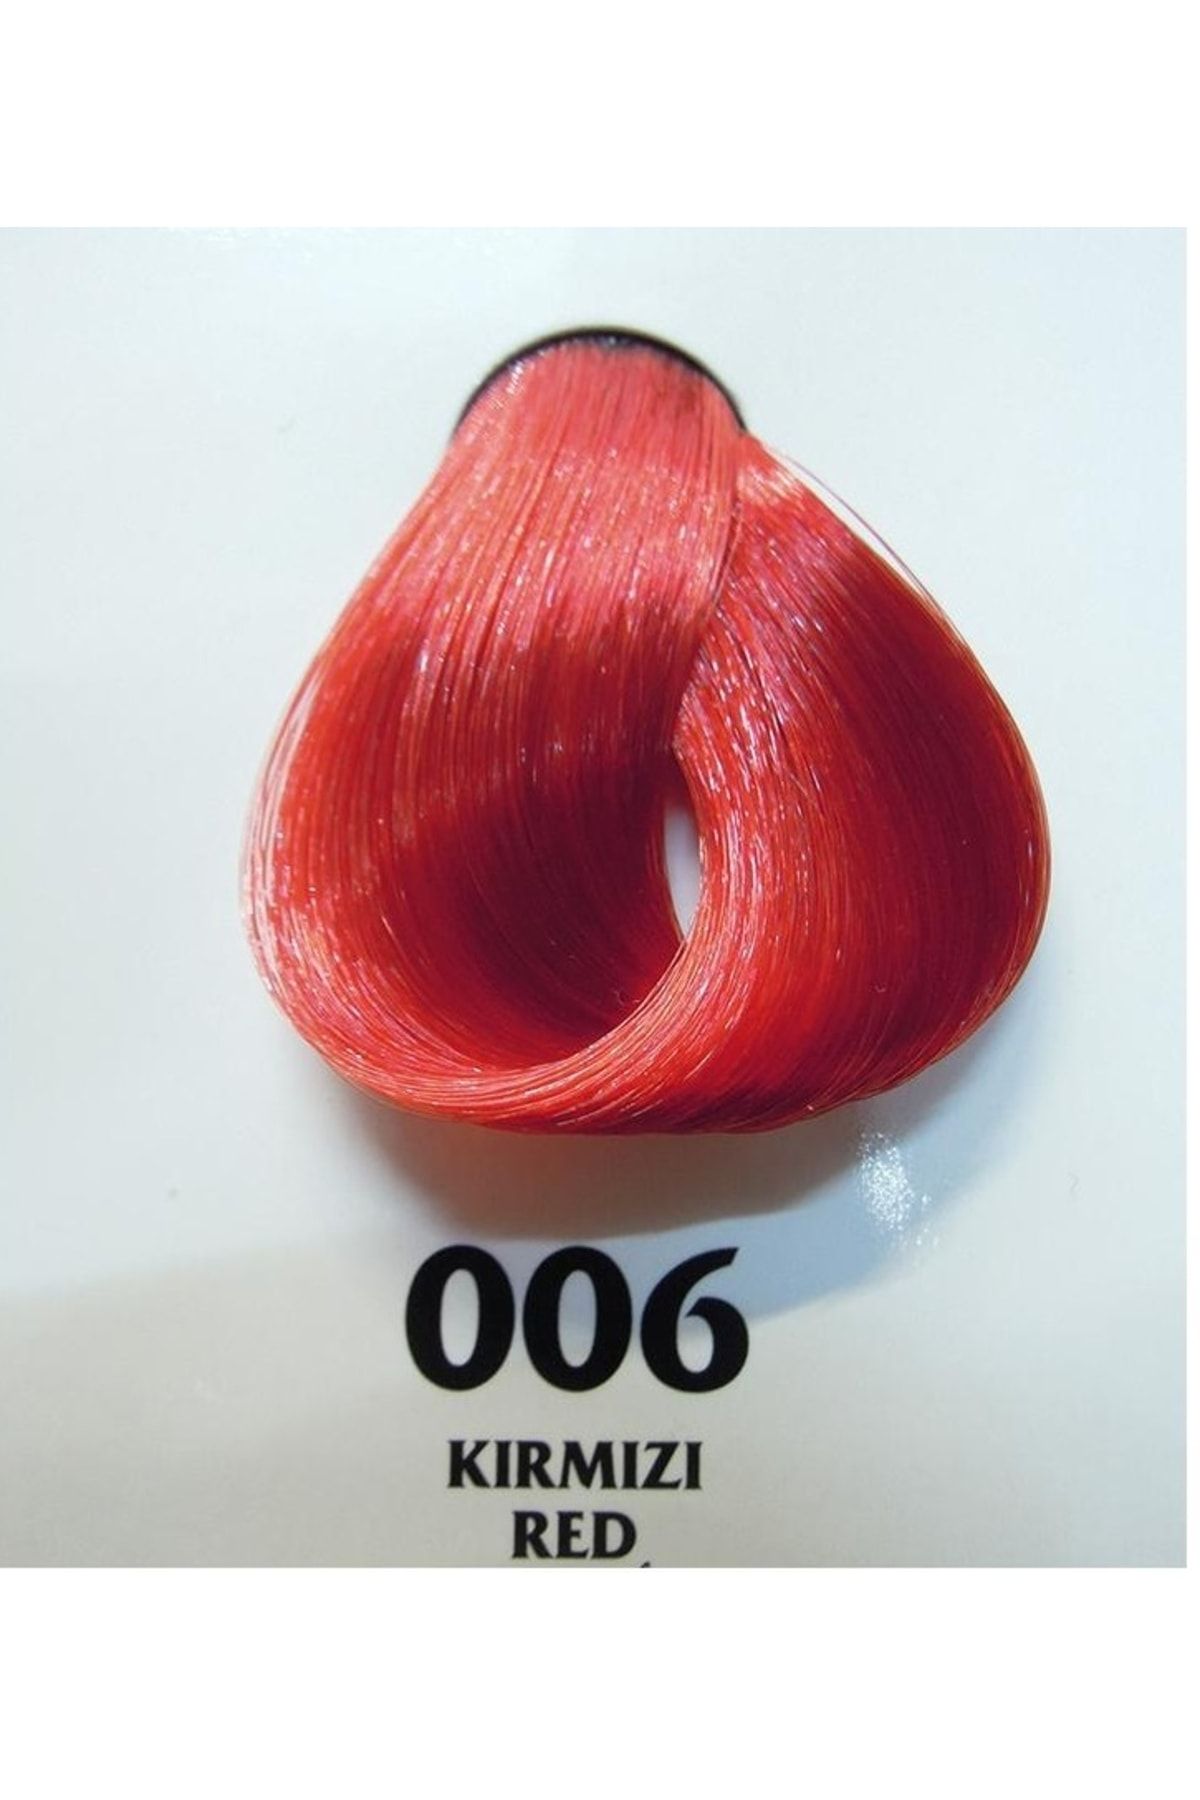 Clemency Farmavita Saç Boyası Kırmızı 006 60gr.